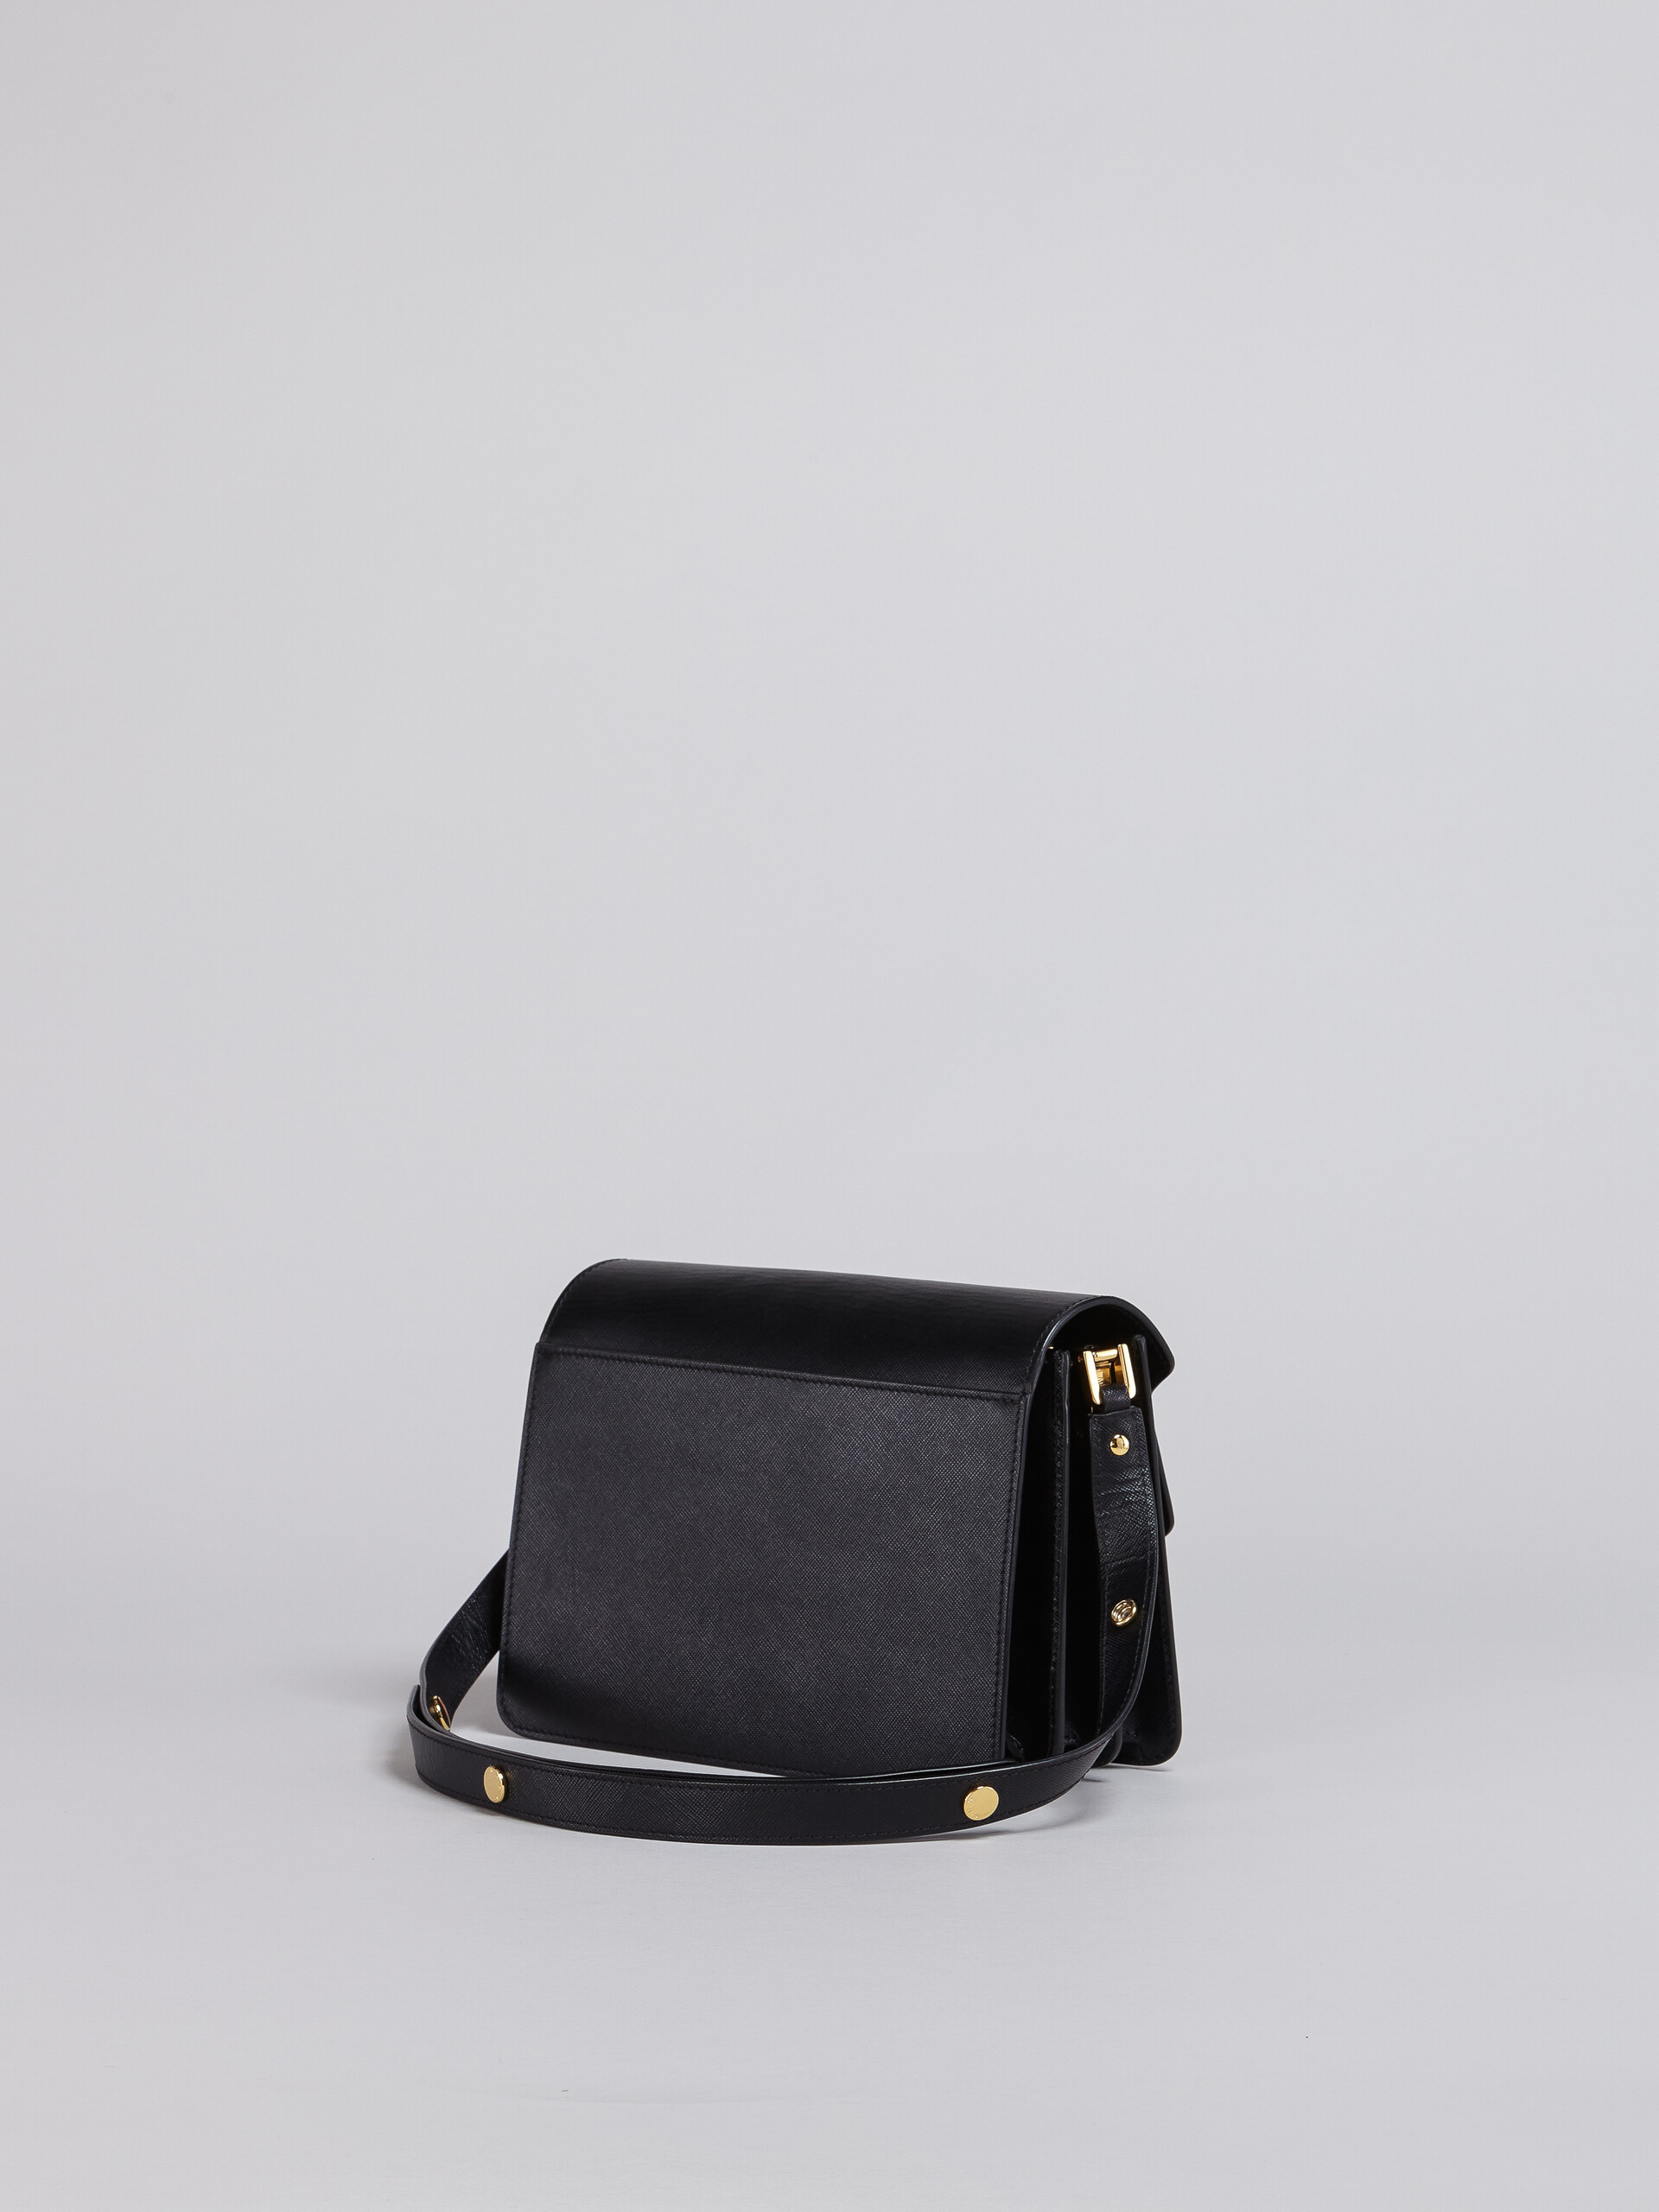 TRUNK medium bag in black saffiano leather - Shoulder Bag - Image 2